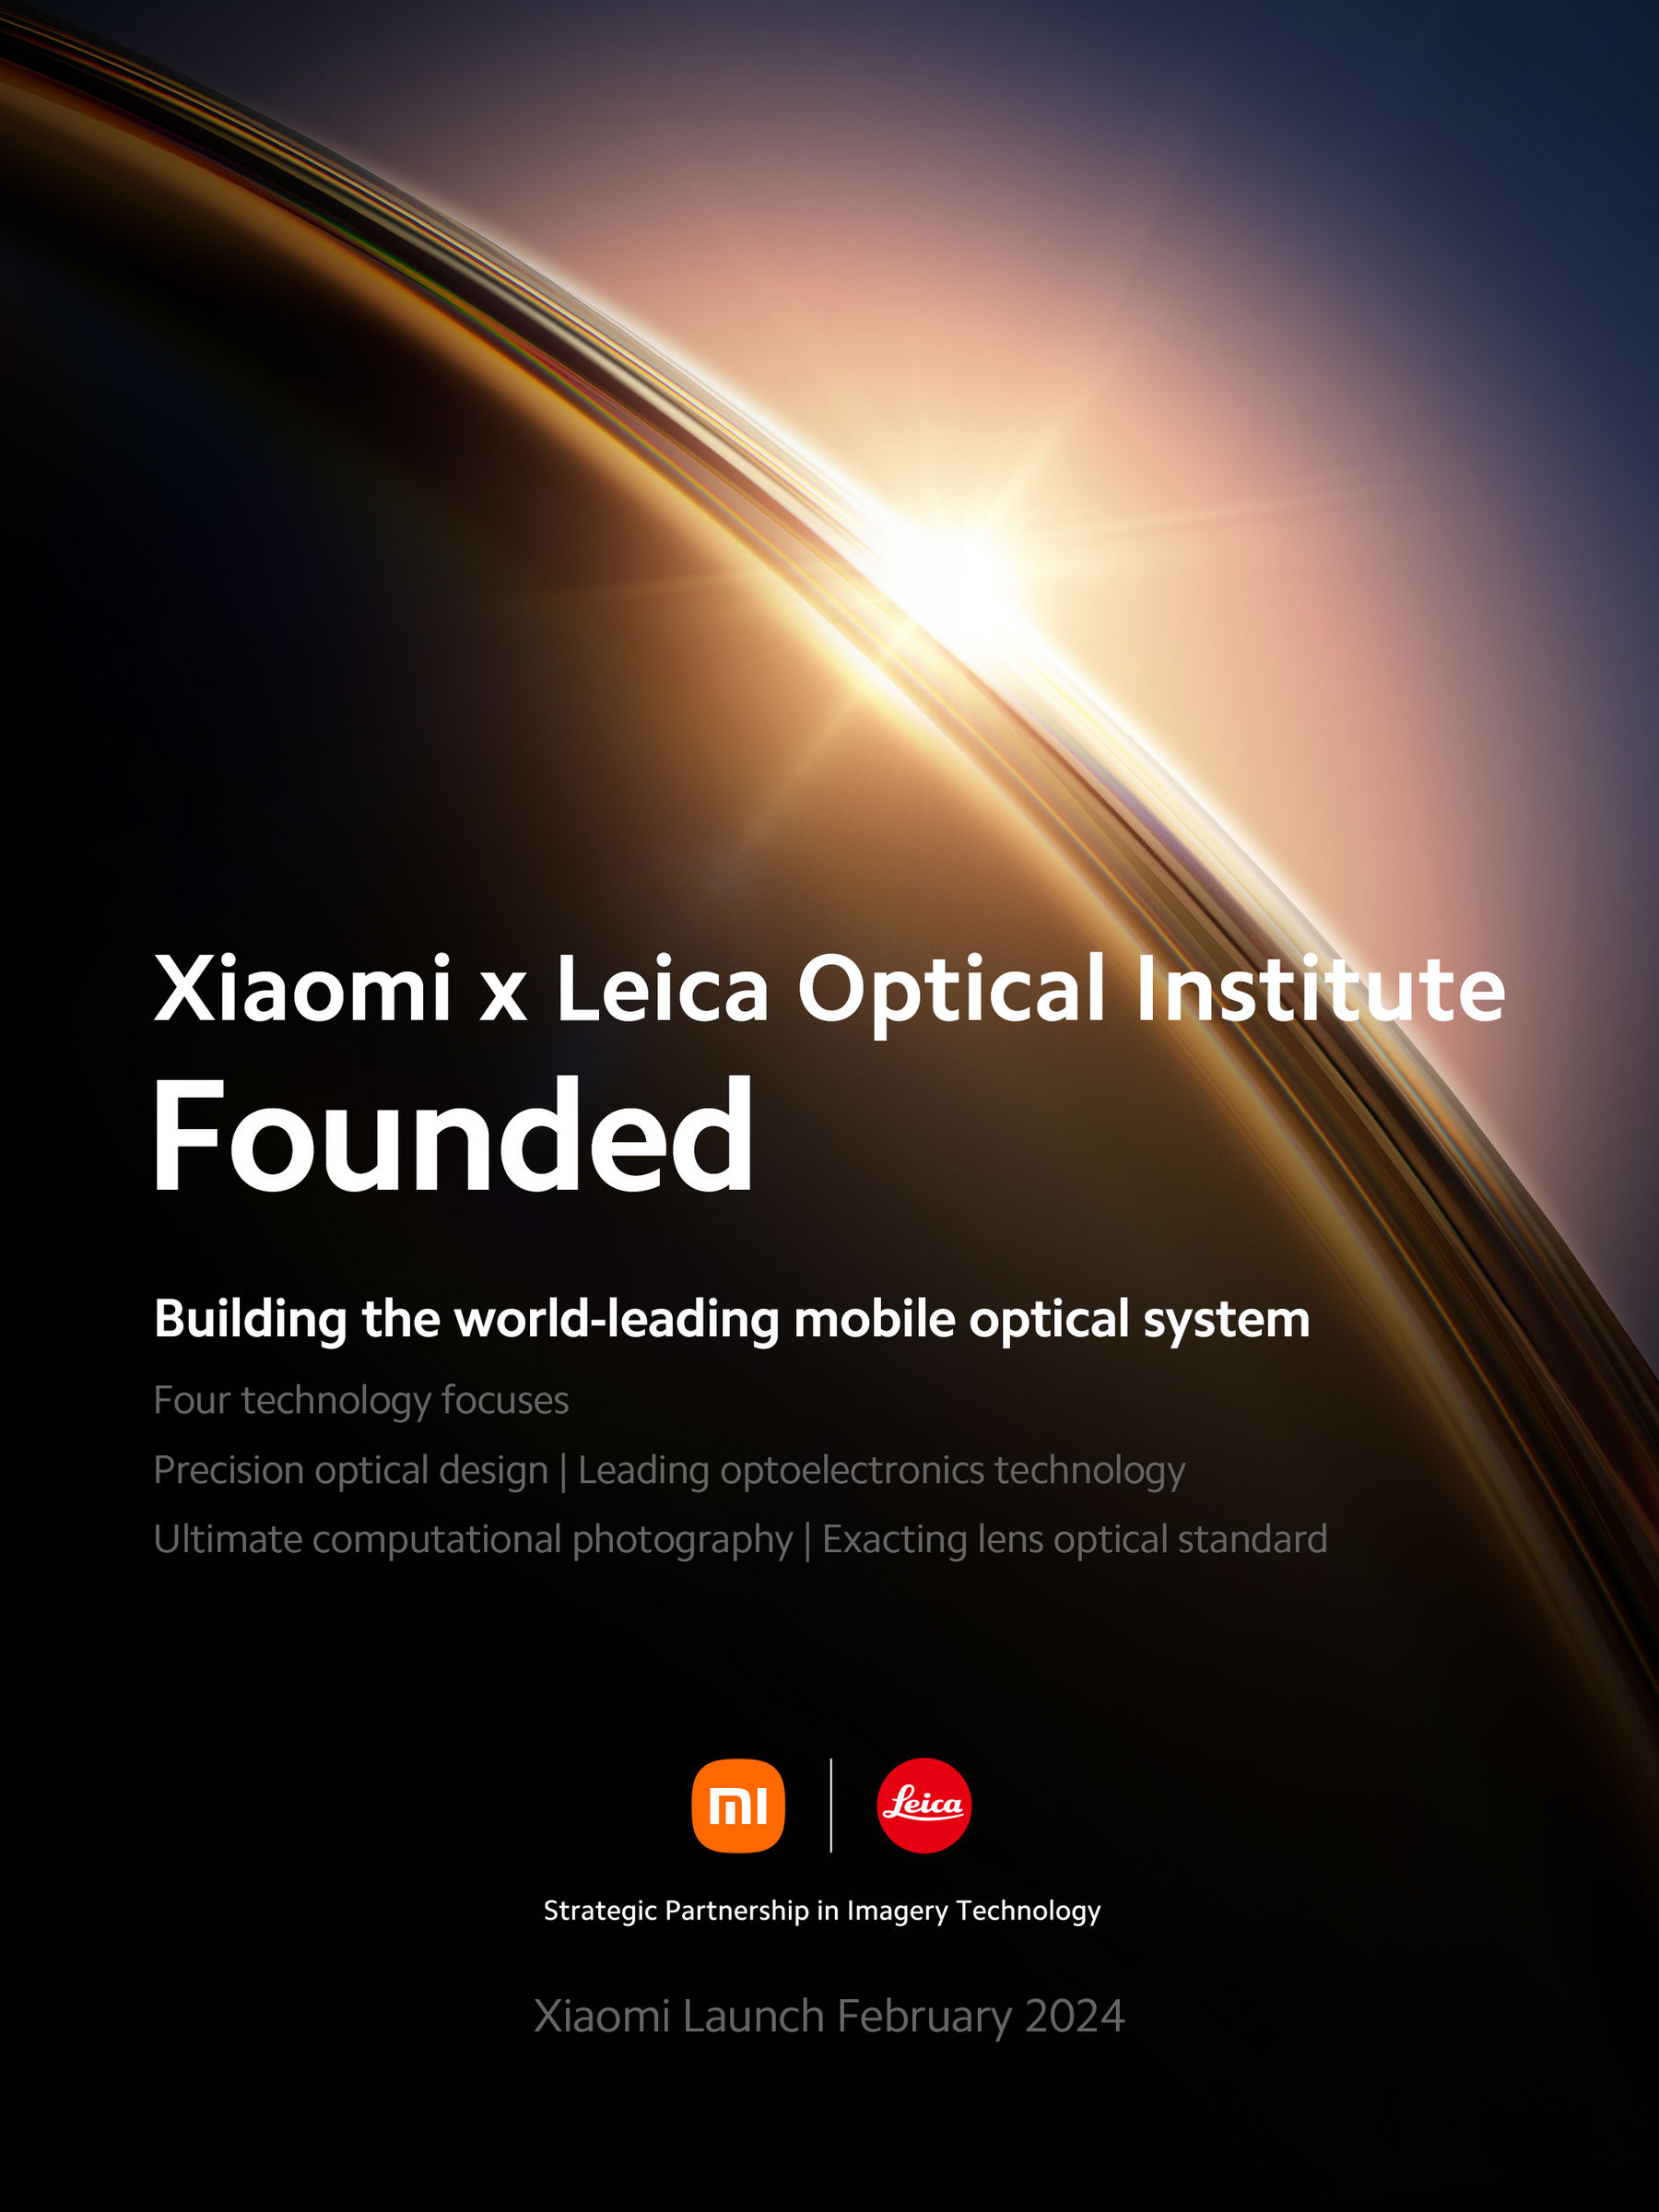 เสียวหมี่ร่วมกับไลก้าจัดตั้ง ‘Xiaomi x Leica Optical Institute’ รุกบุกเบิกความก้าวหน้าด้านนวัตกรรมในการถ่ายภาพด้วยมือถือ